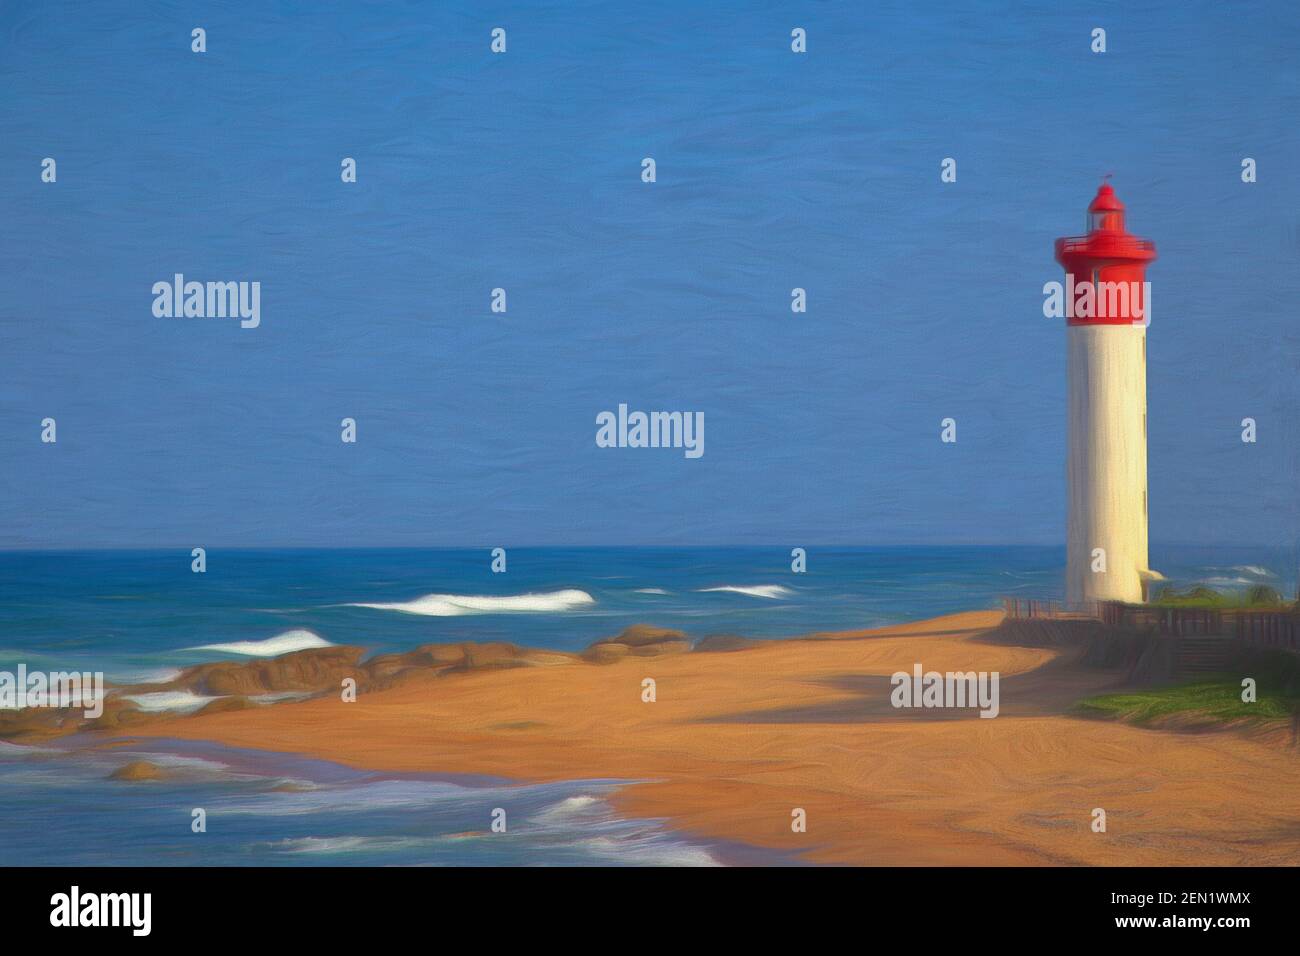 Digital painting of the Umhlanga Lighthouse, Kwazulu Natal, South Africa Stock Photo